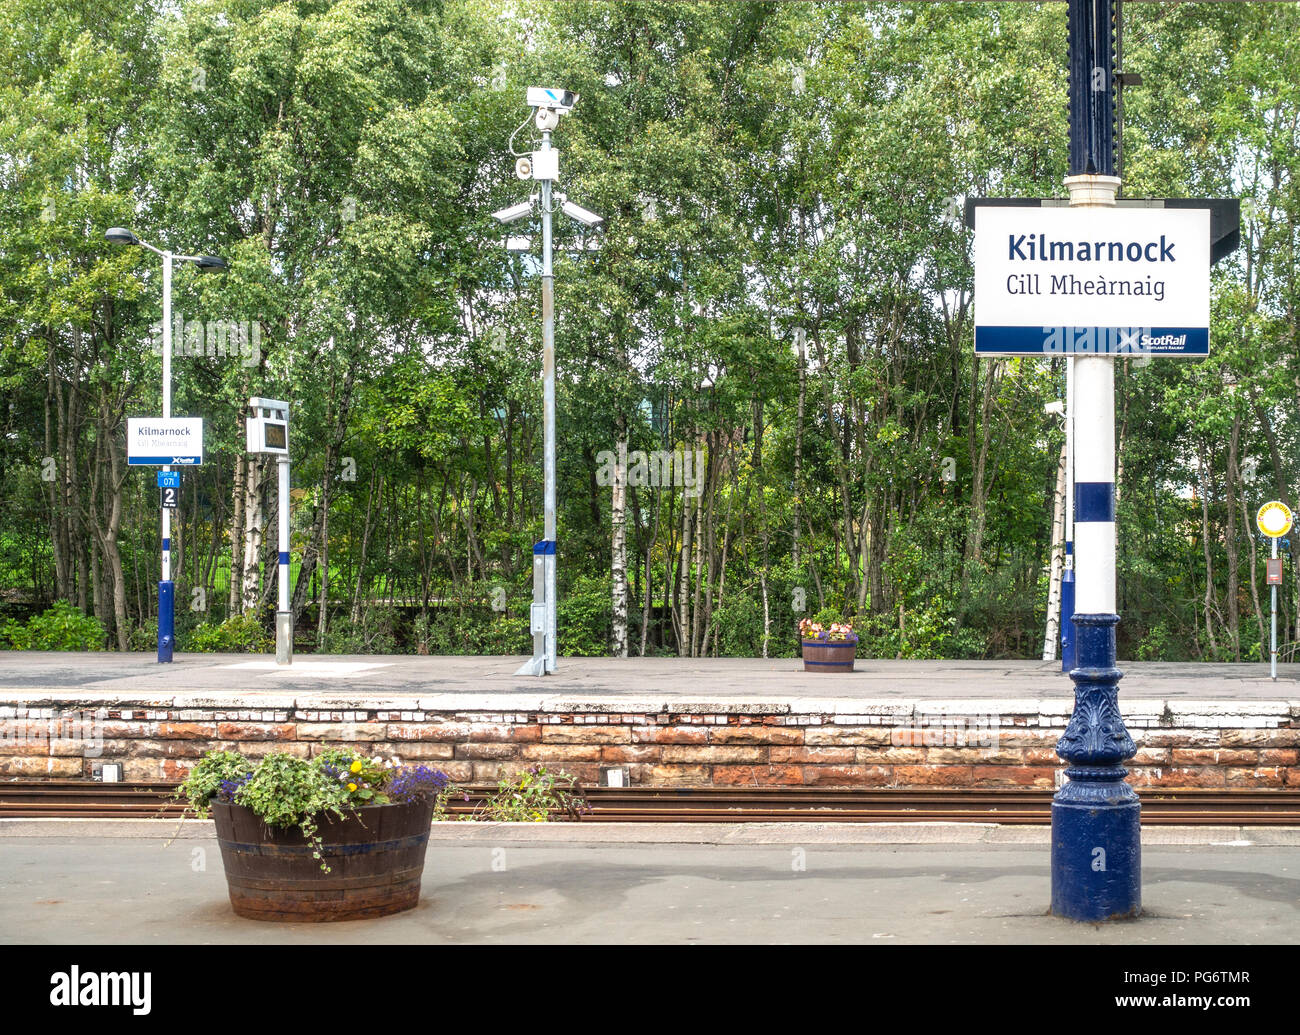 Dos plataformas de Kilmarnock Railway Station en East Ayrshire, con señales bilingües: Kilmarnock y Cill Mhearnaig. Sembradoras, flores, árboles, bosques, Foto de stock